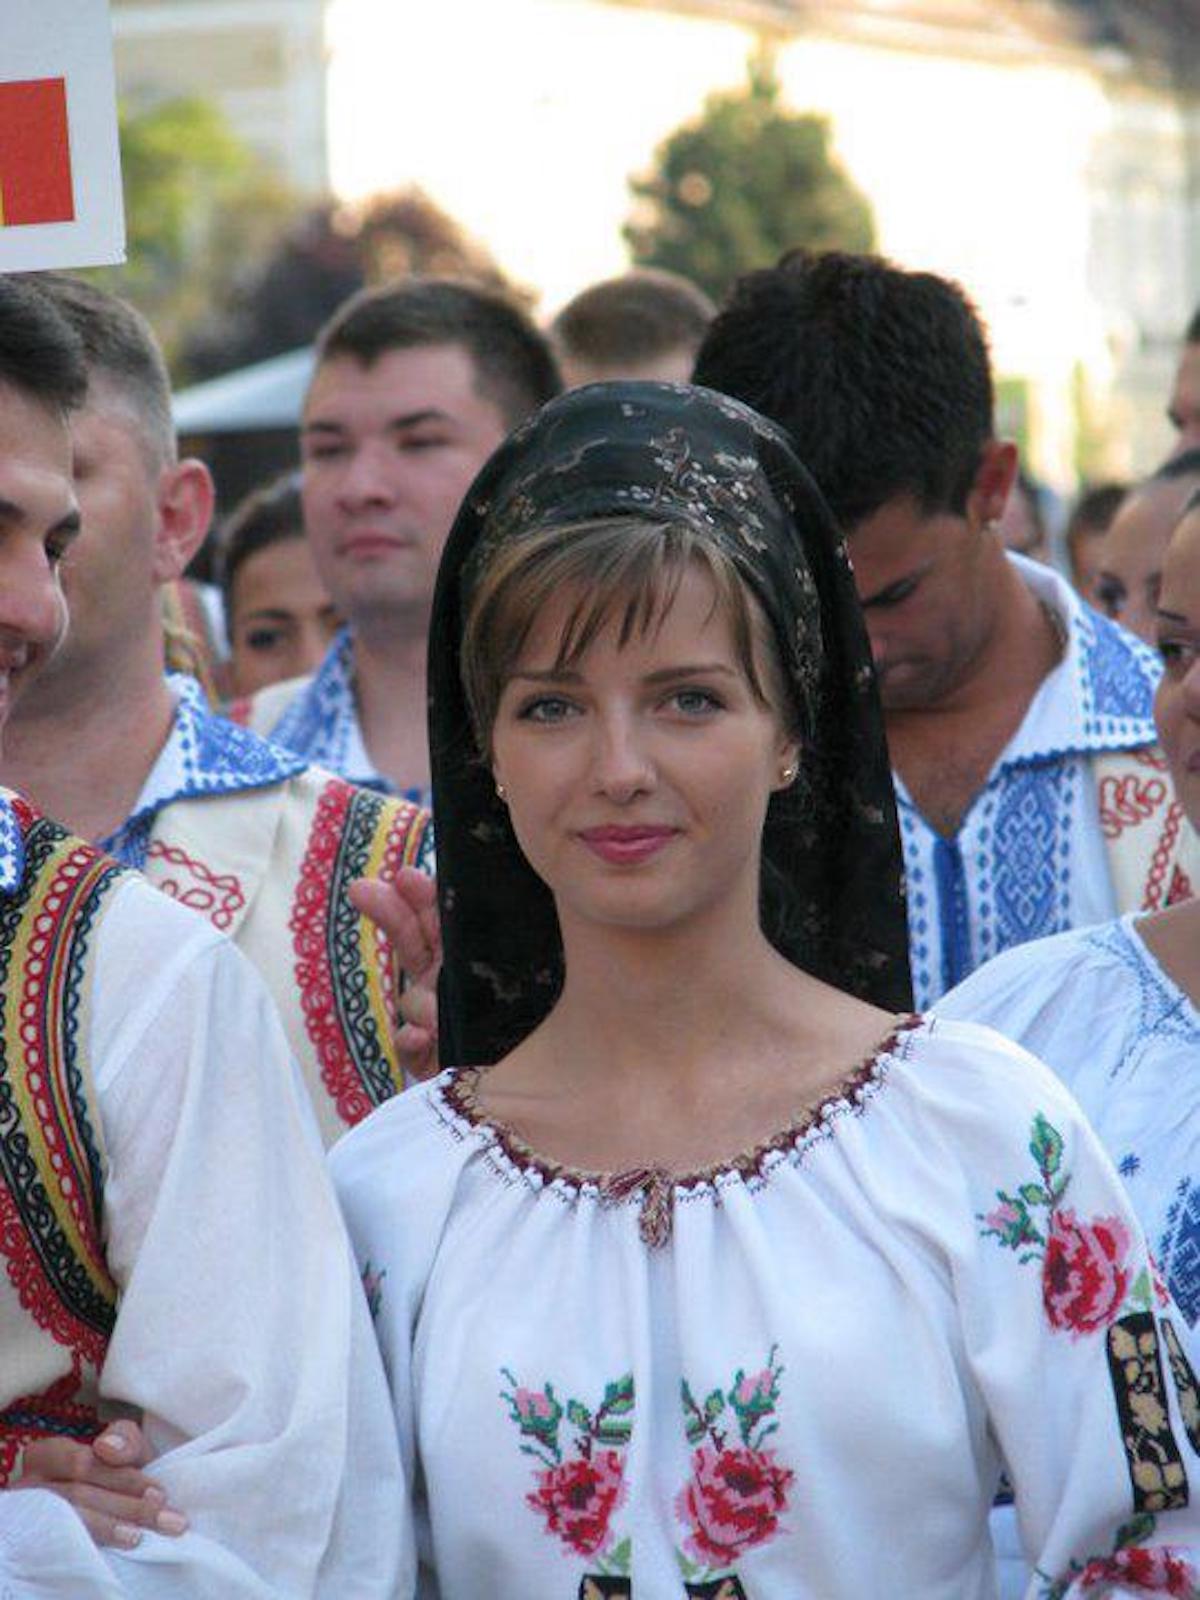 население румынии